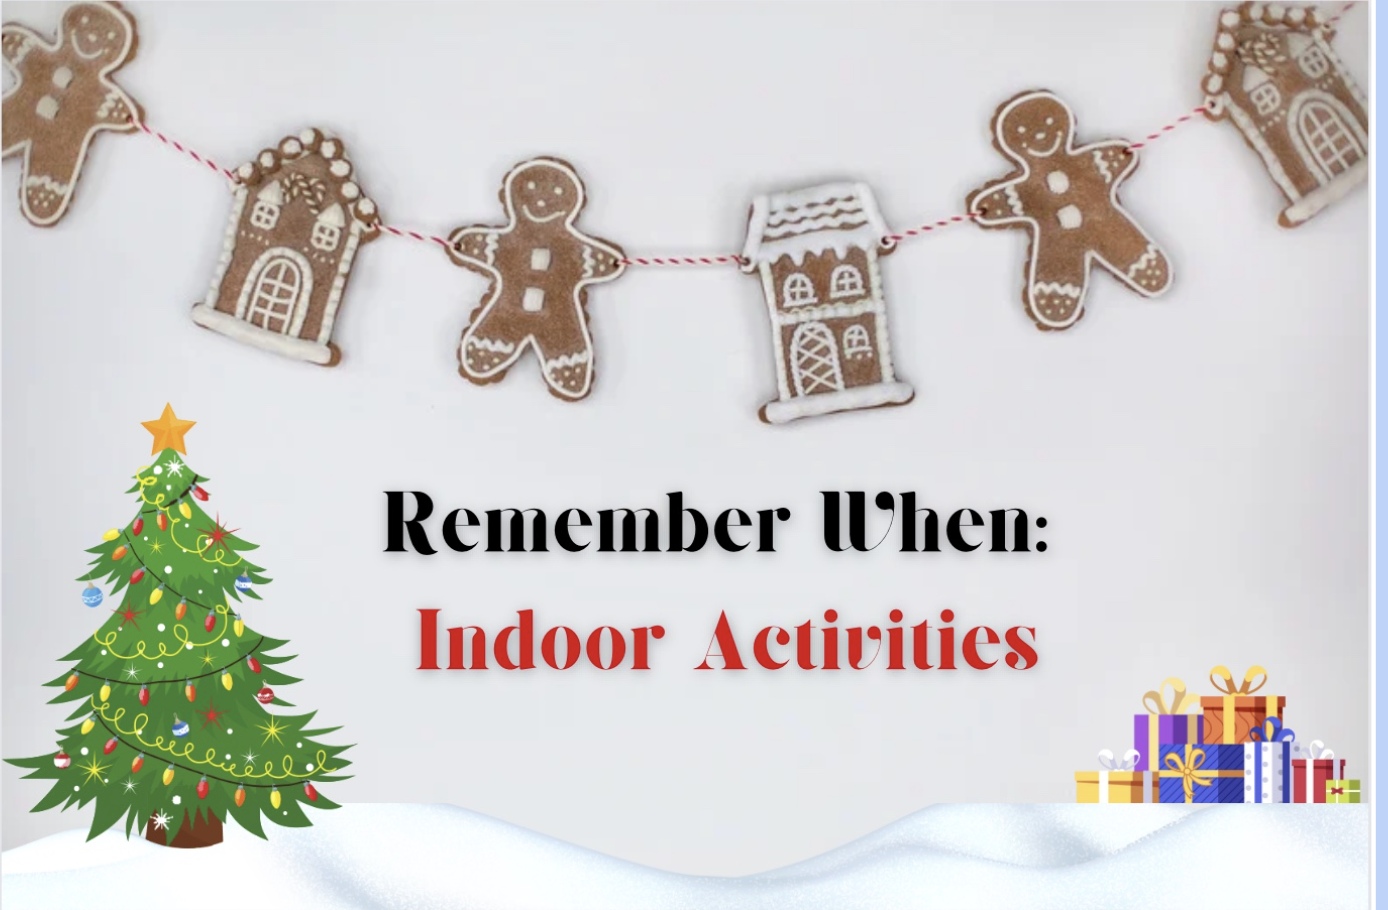 Remember When: Indoor Activities